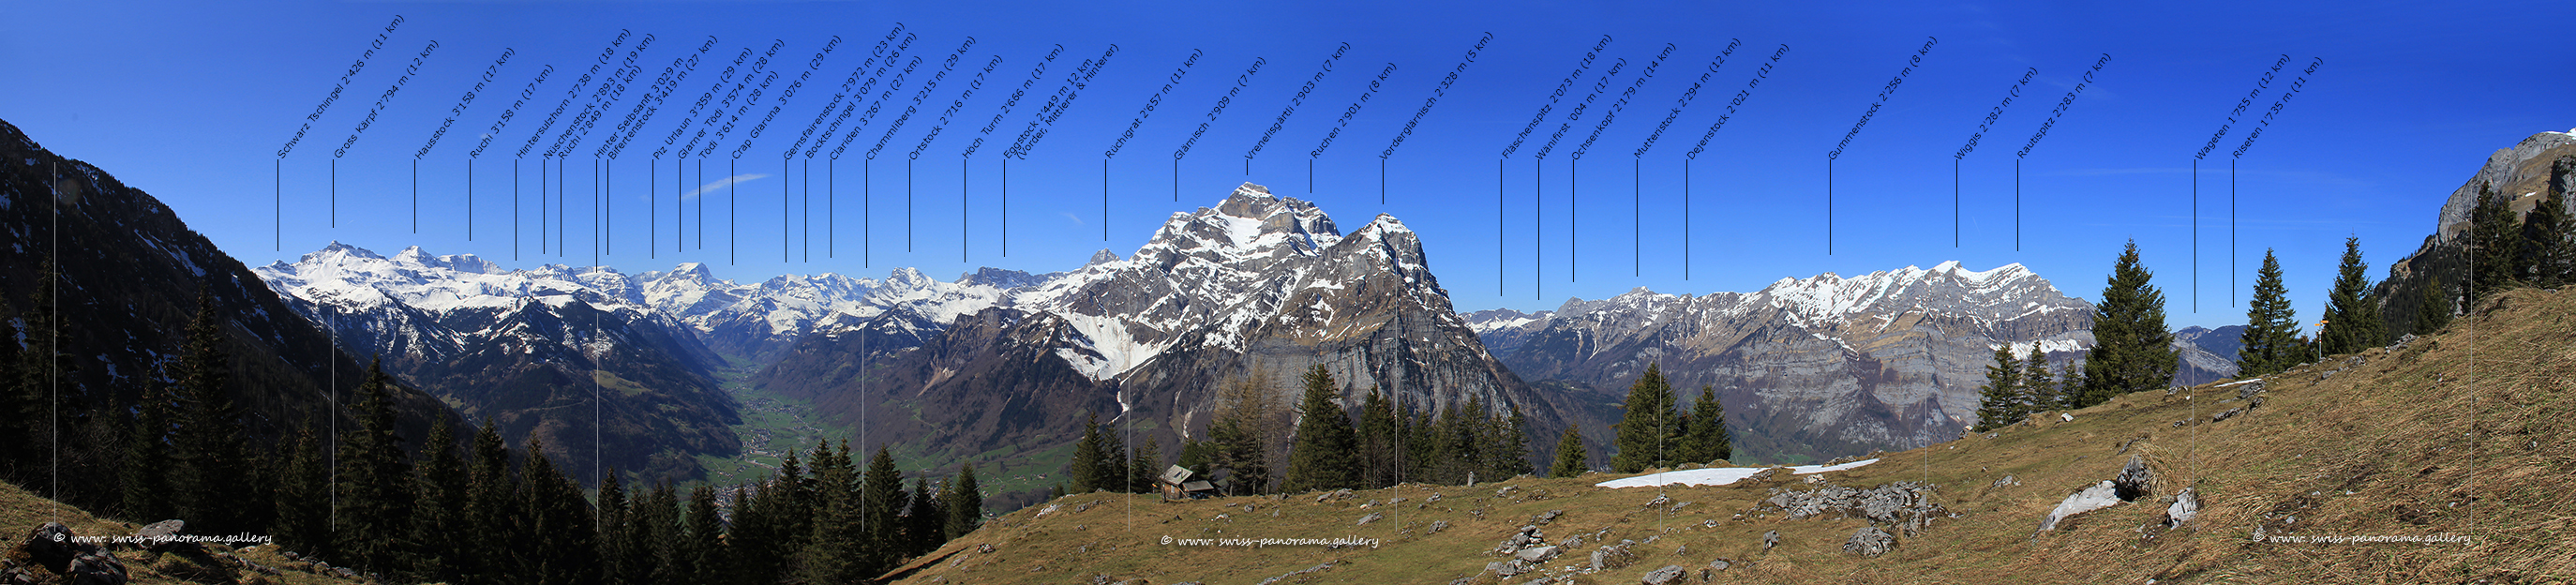 Äugstenhütte Panorama Aeugsten Bärenboden Panorama Aeugstenbahn